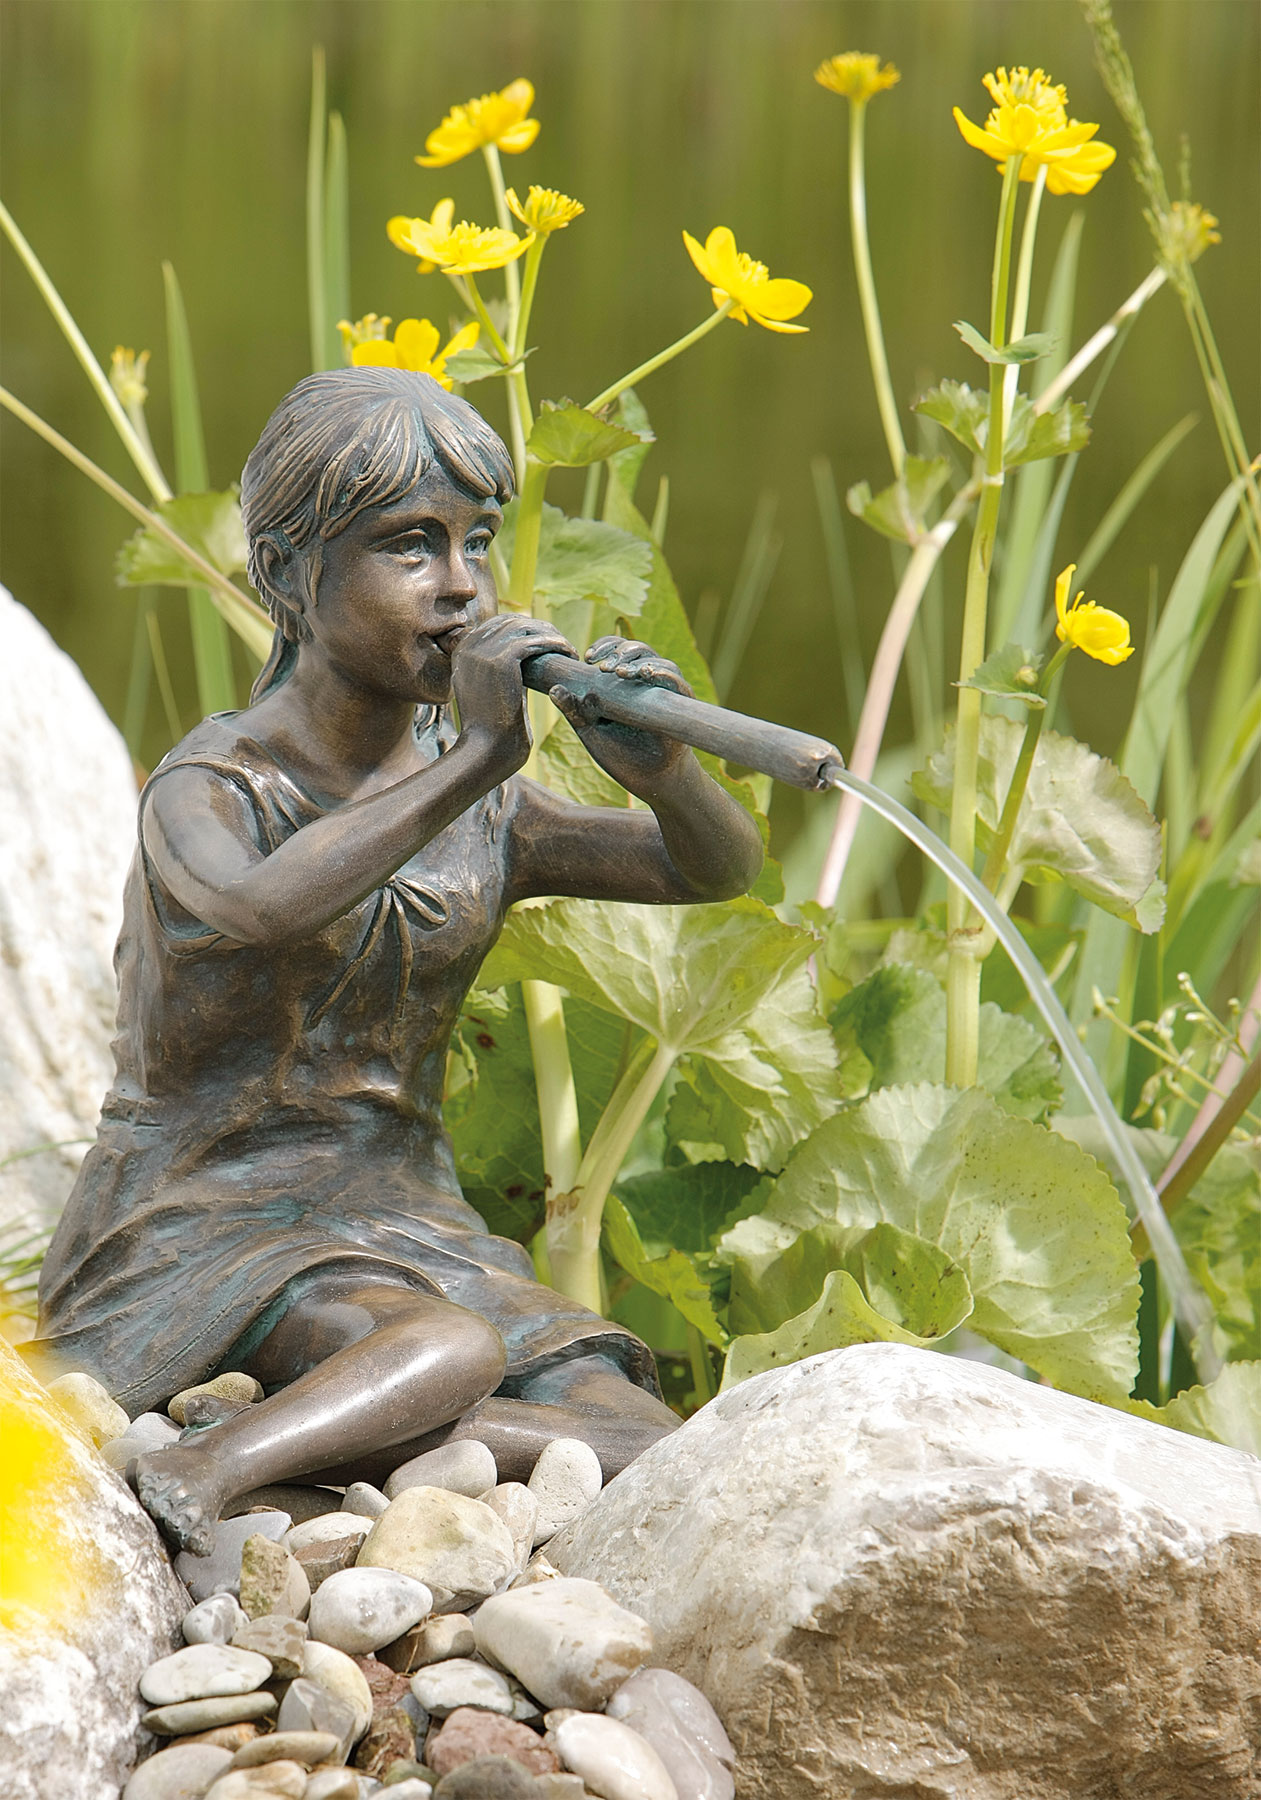 Garden sculpture / gargoyle "Flute Player", bronze